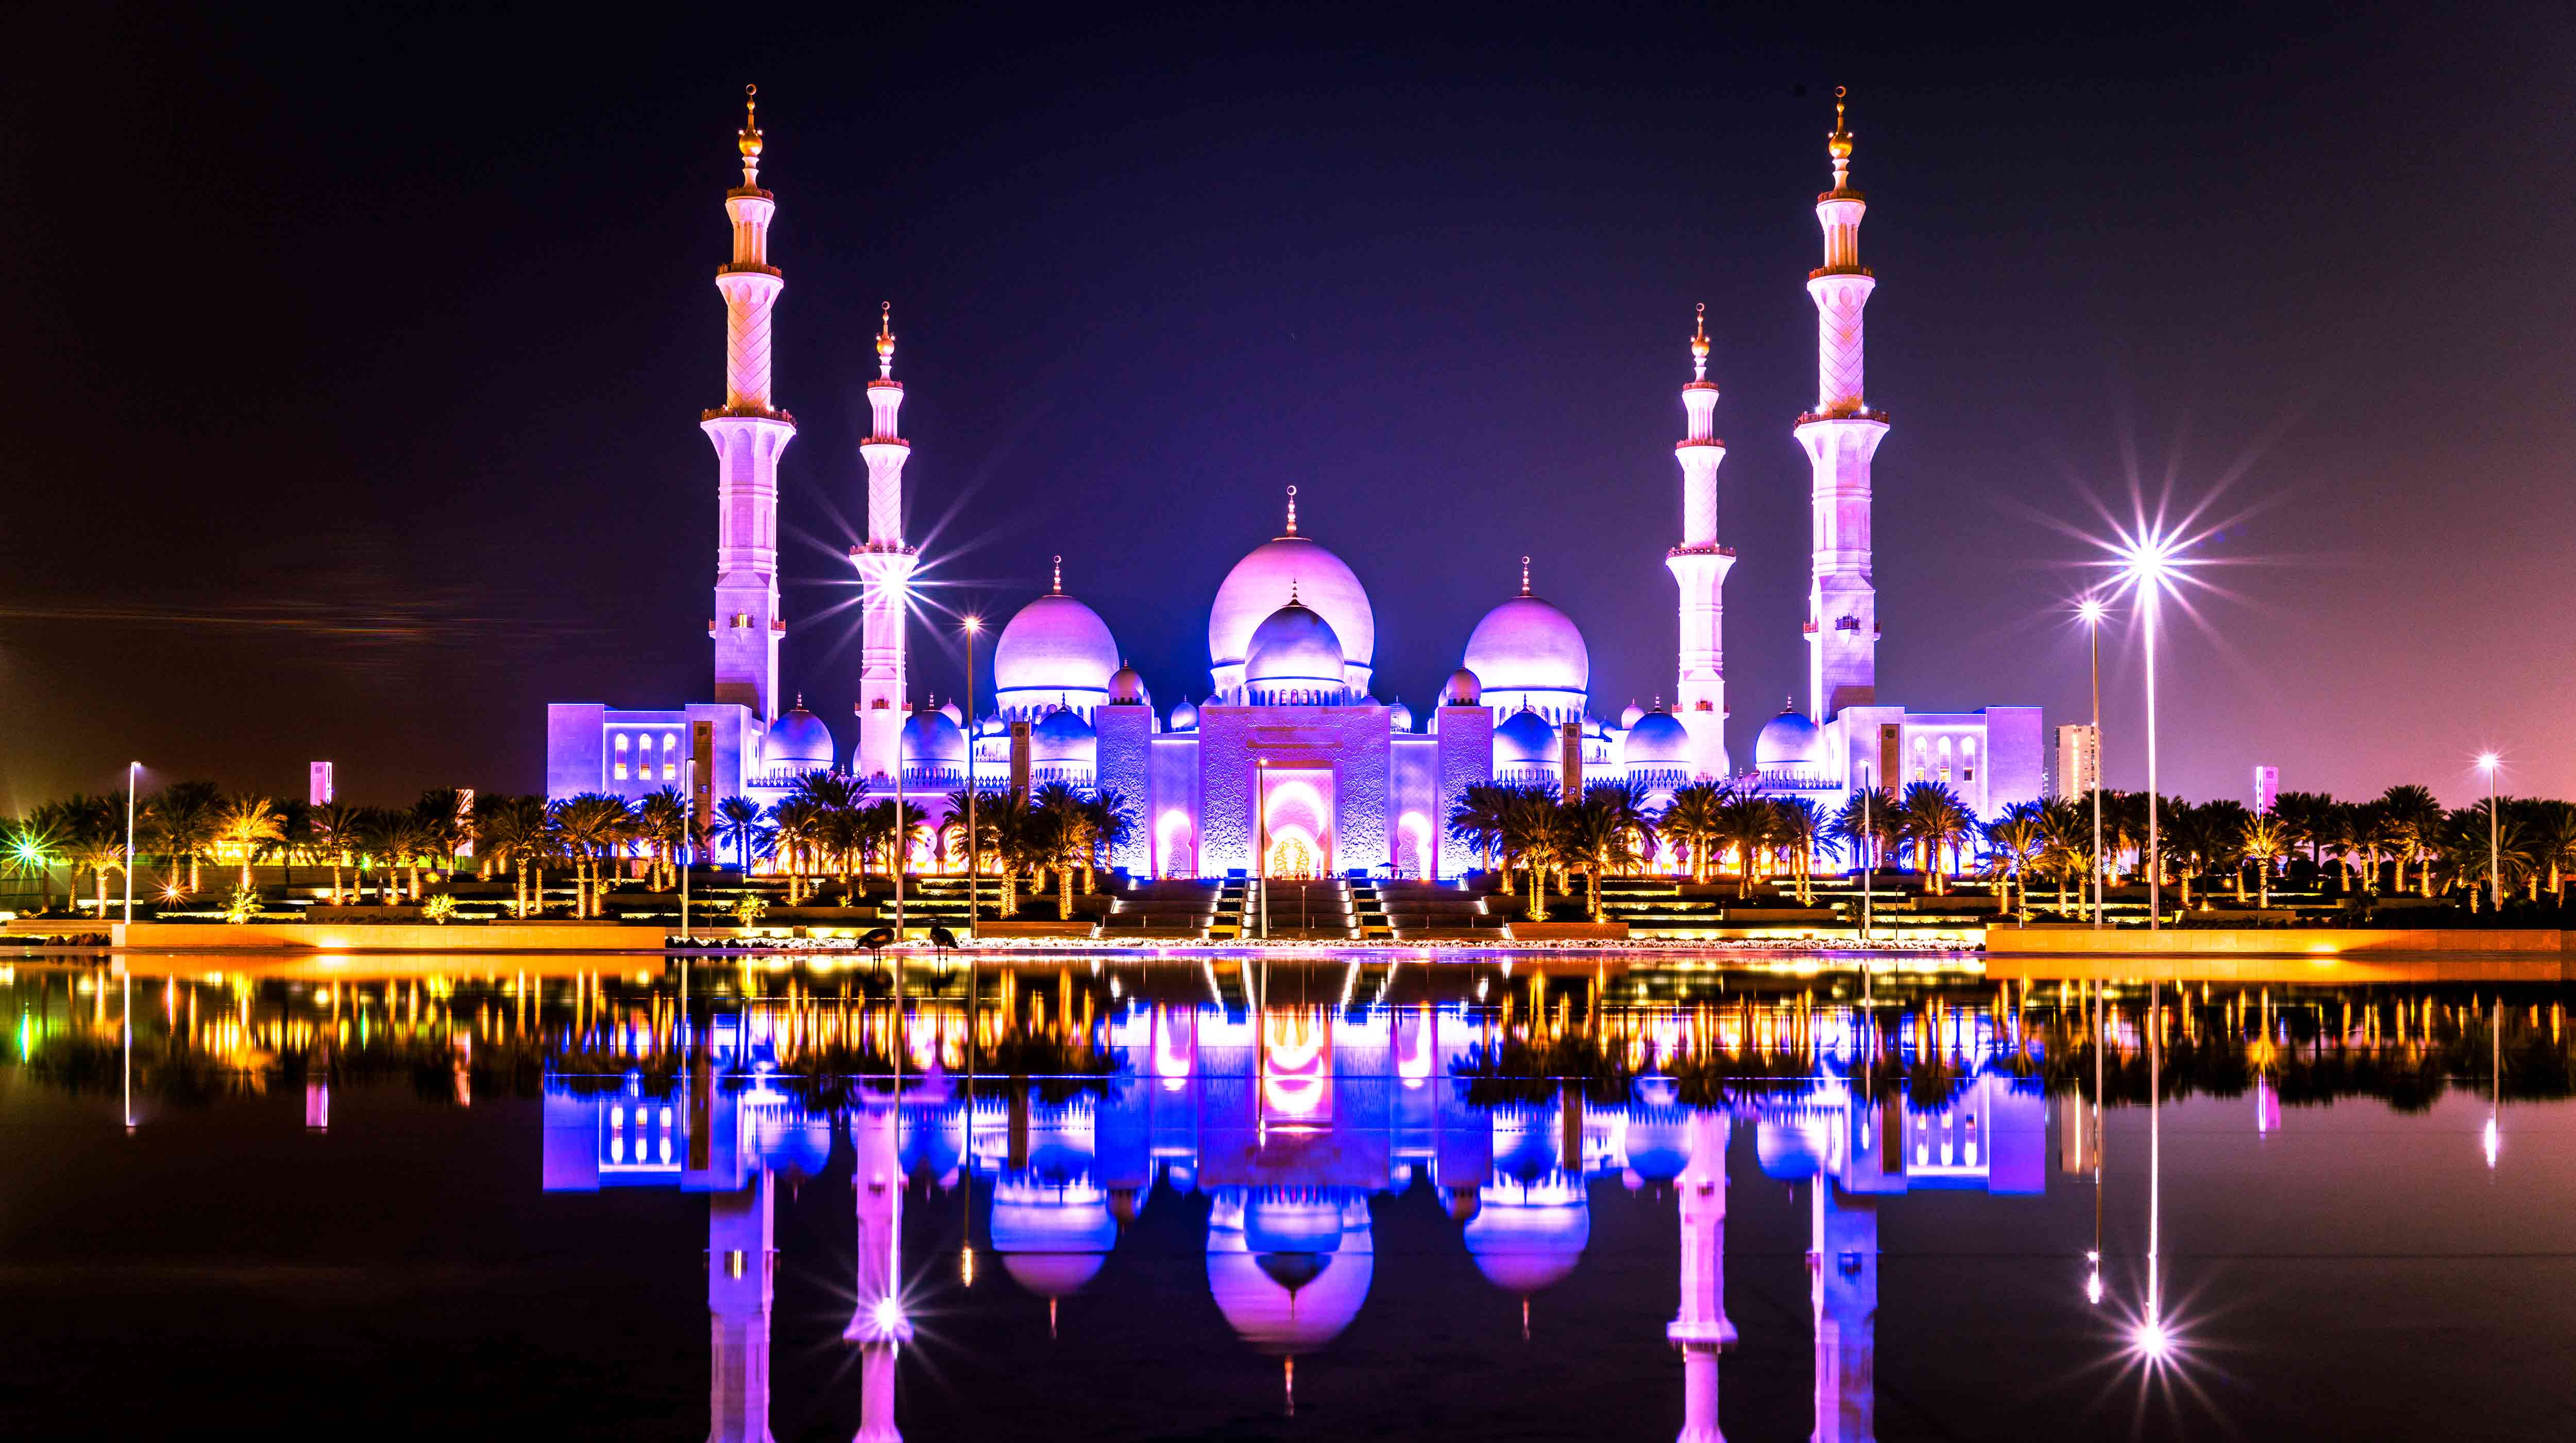 המסגד הגדול שייח' זאייד (Sheikh Zayed Grand Mosque)